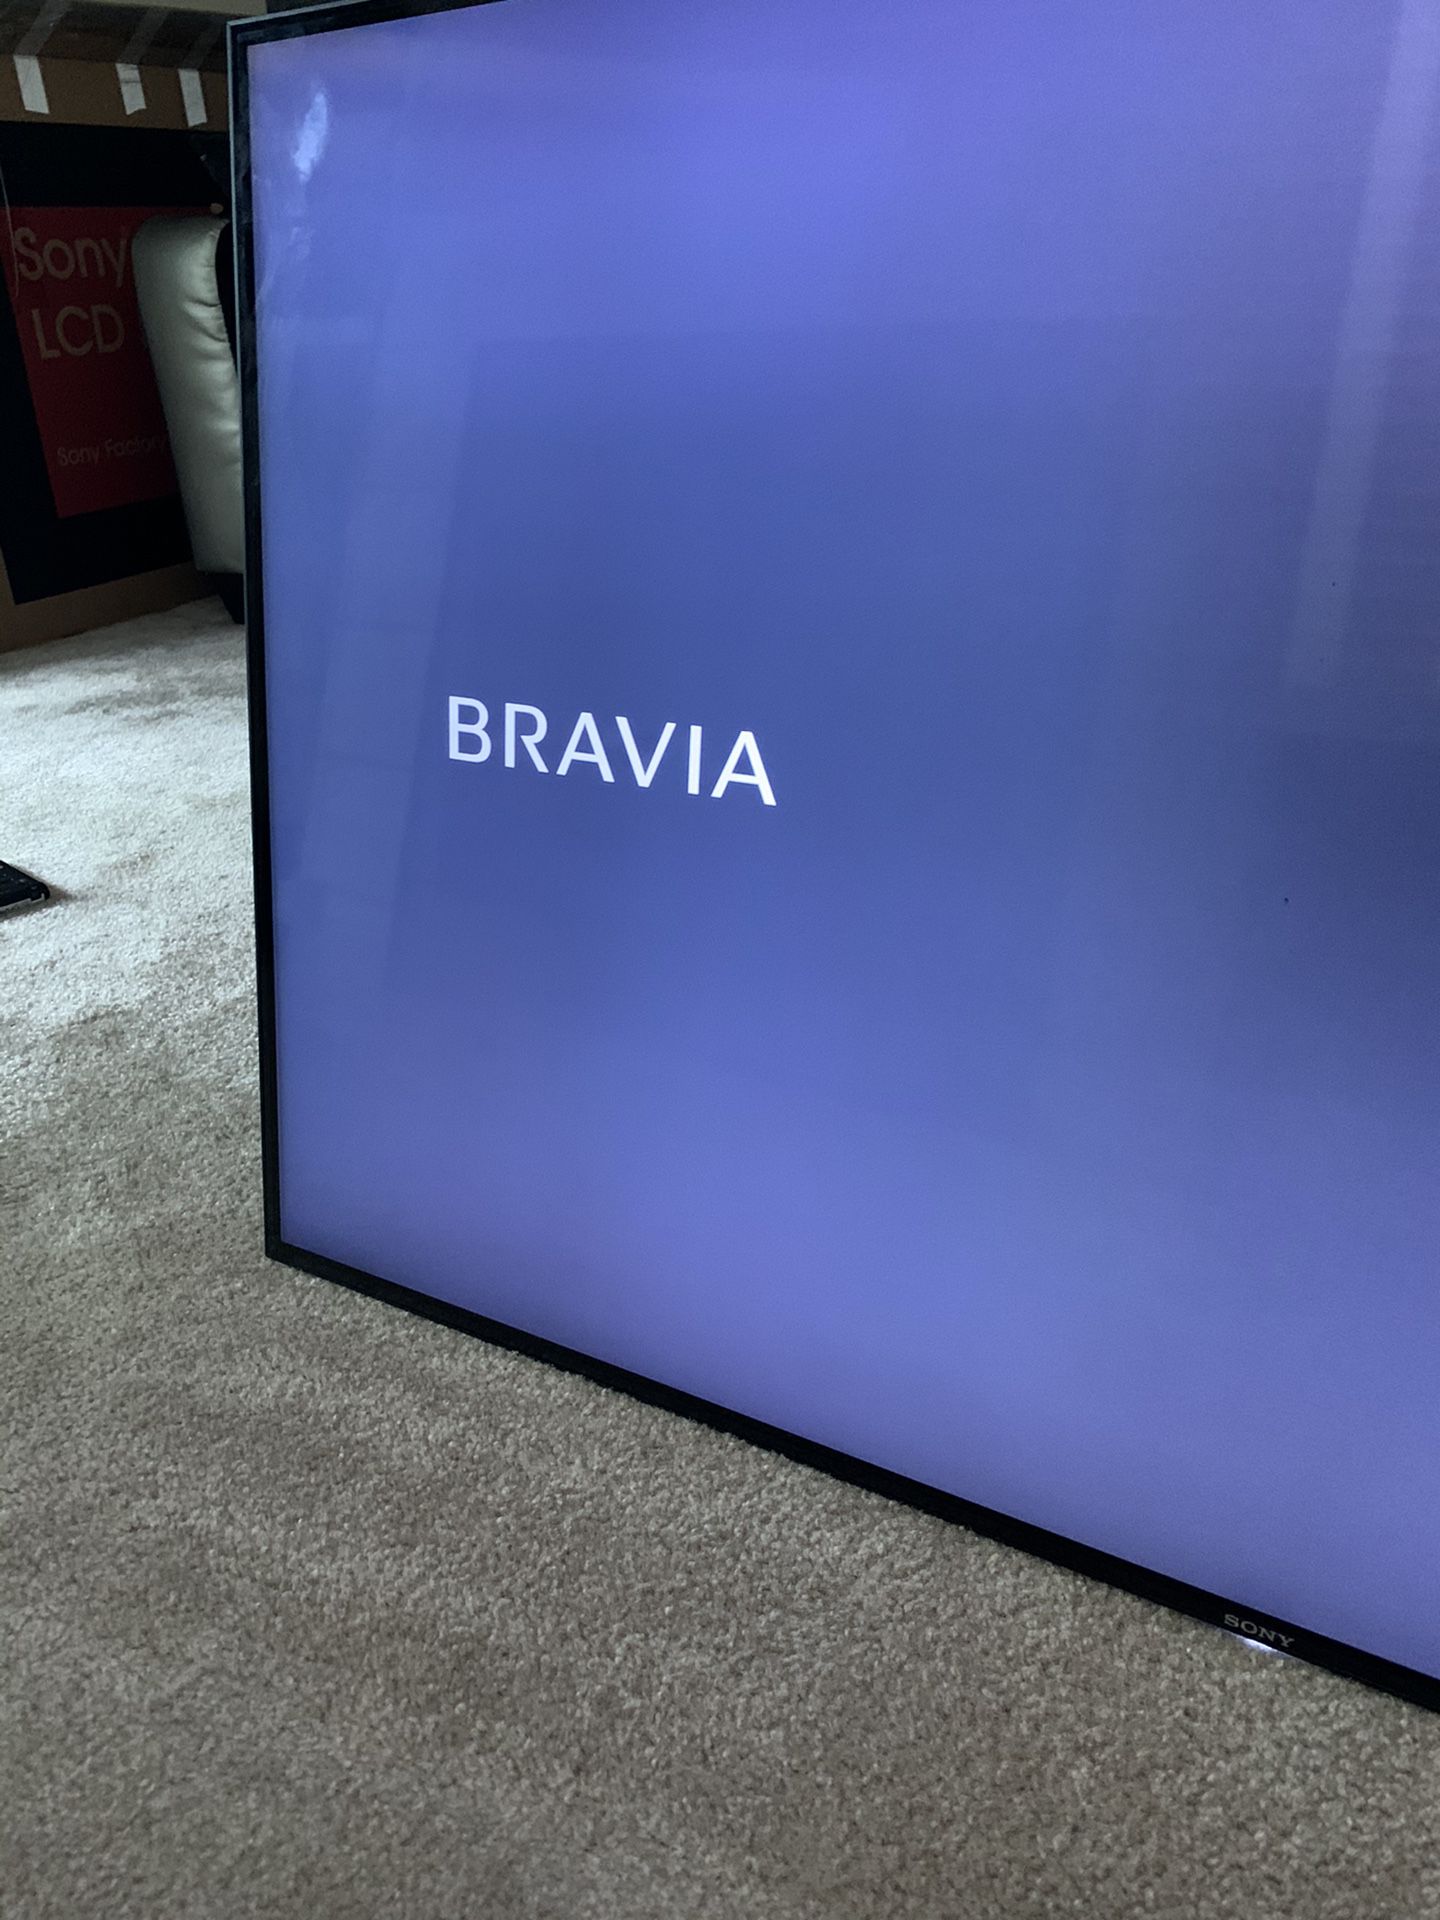 Sony Bravia TV 55in